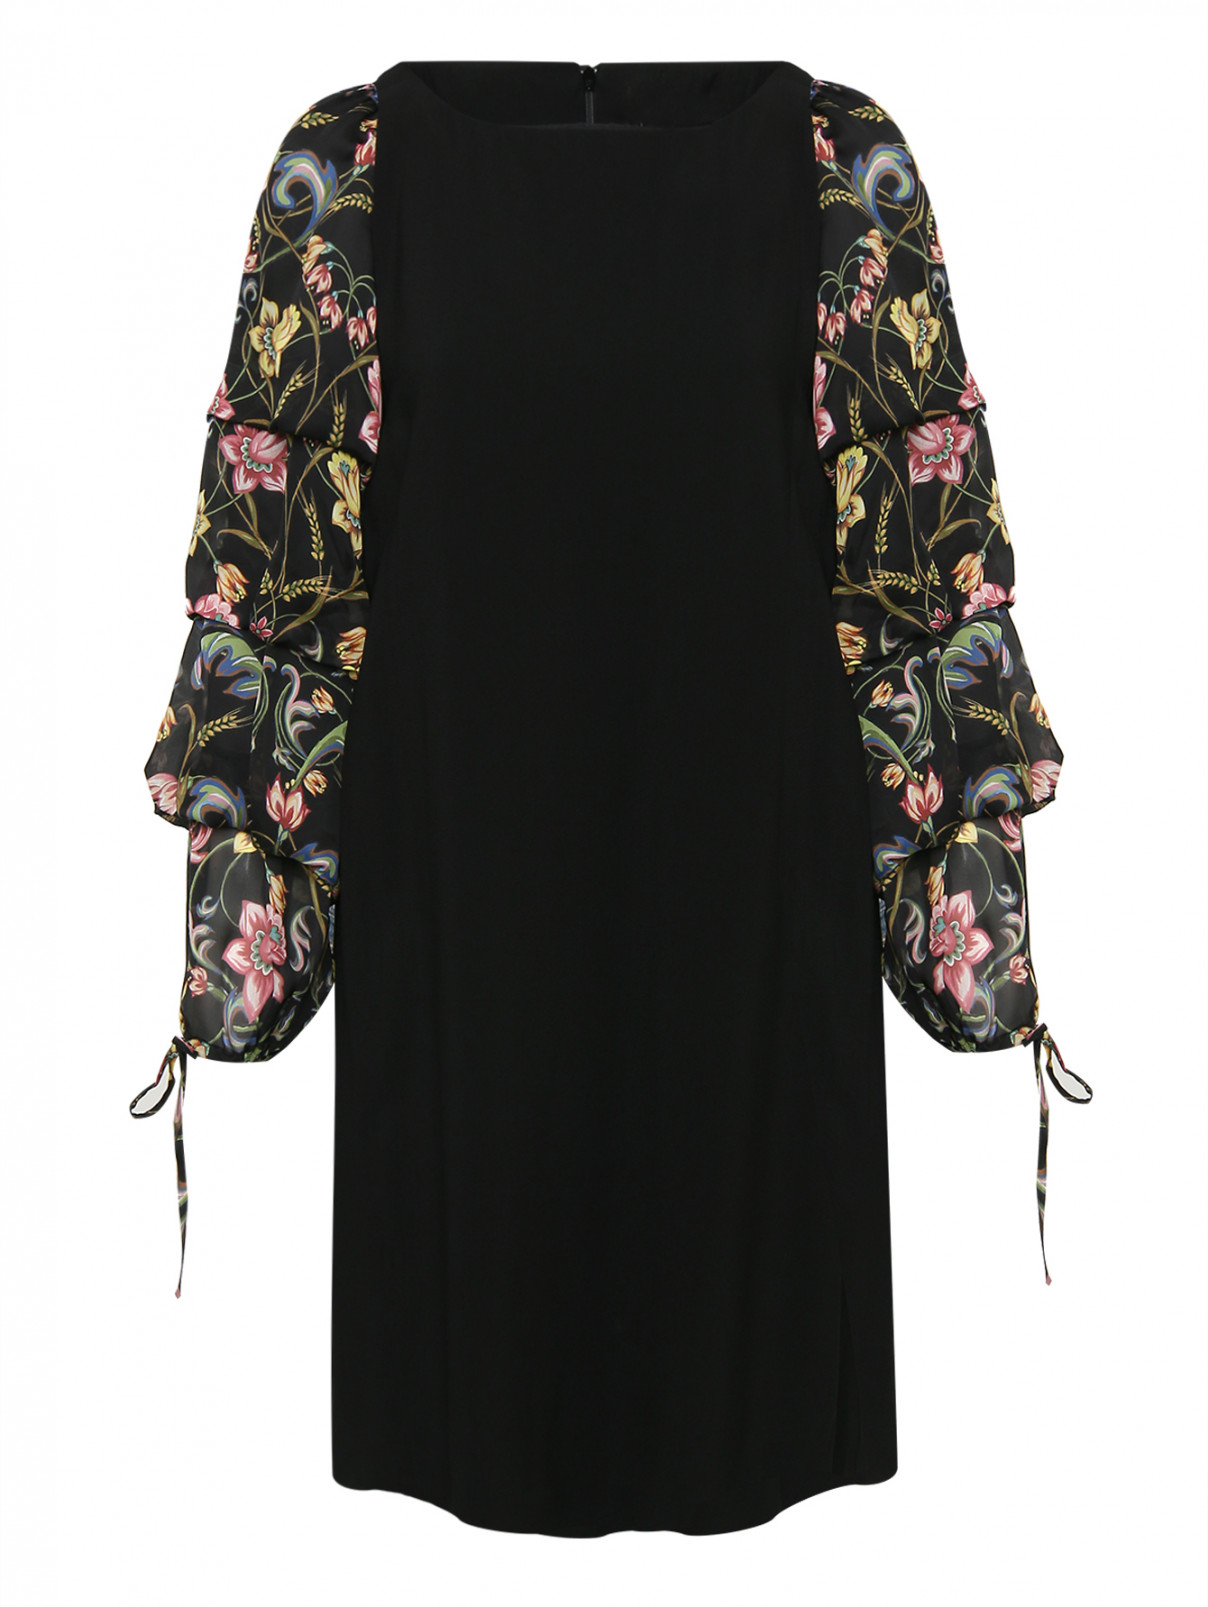 Платье с рукавами в складку Roberto Cavalli  –  Общий вид  – Цвет:  Черный